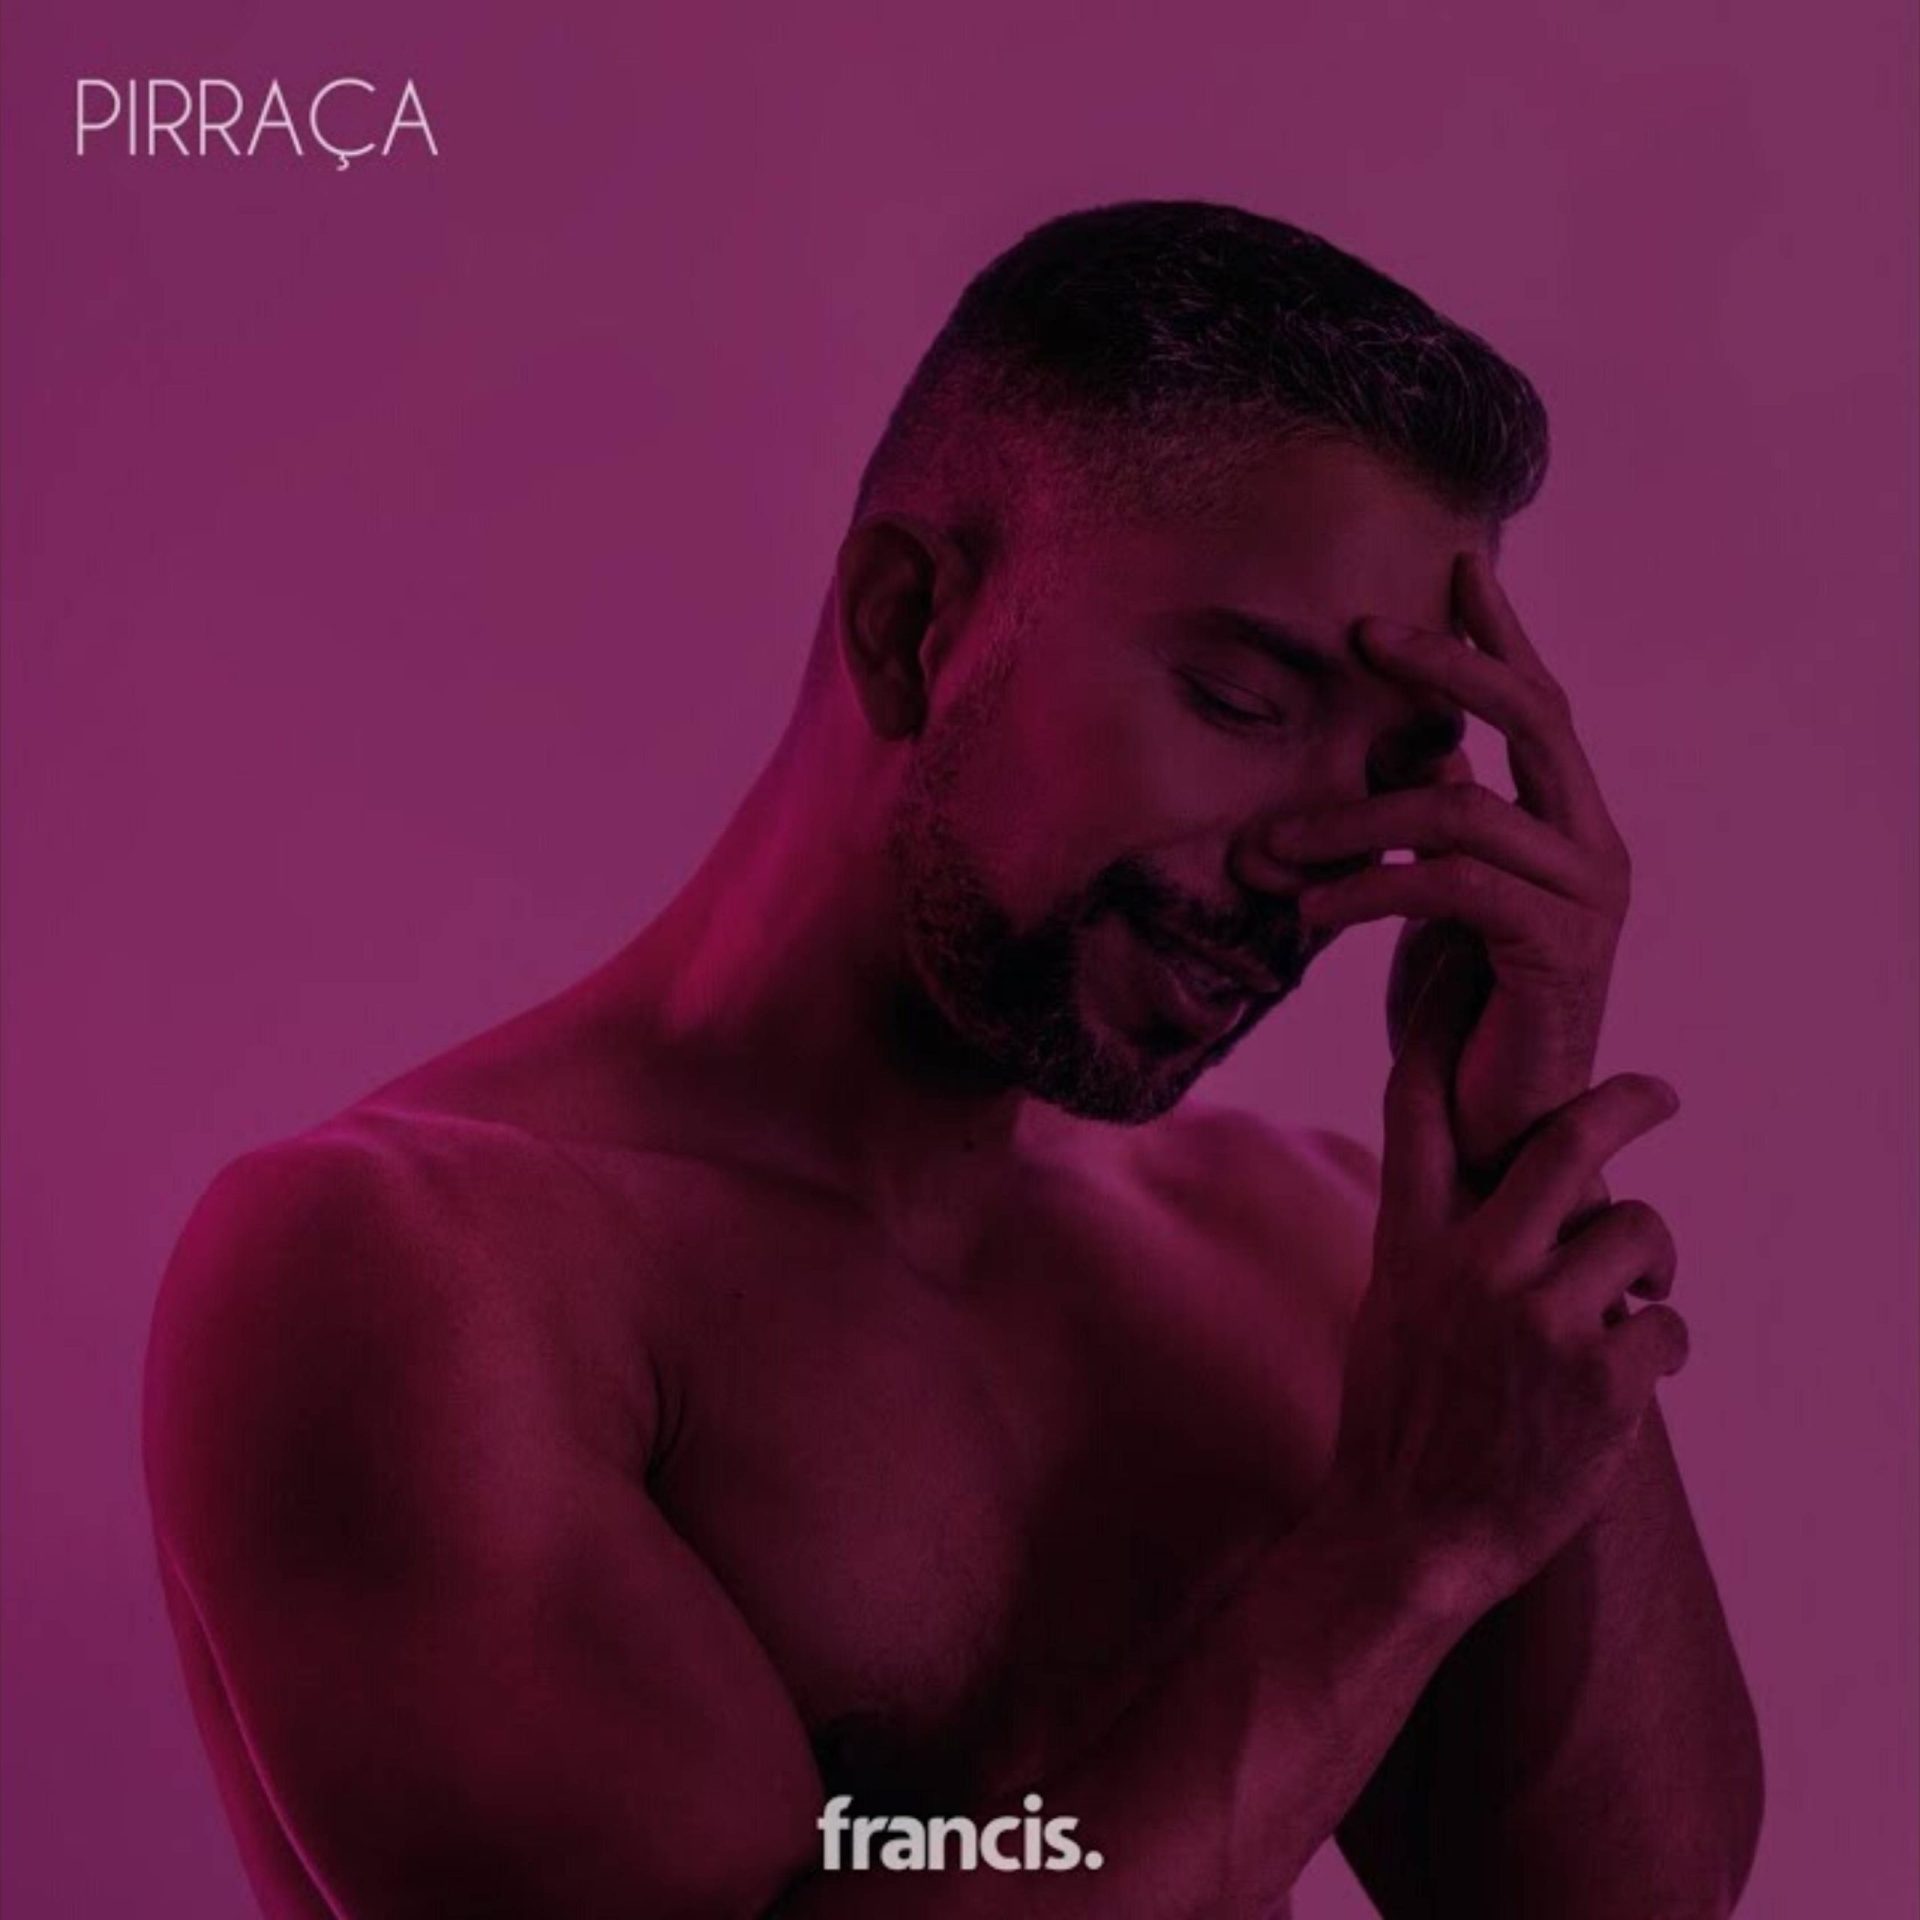 Francis mergulha em seu próprio íntimo em “Pirraça (entre vc eu eu)”, seu novo single e videoclipe